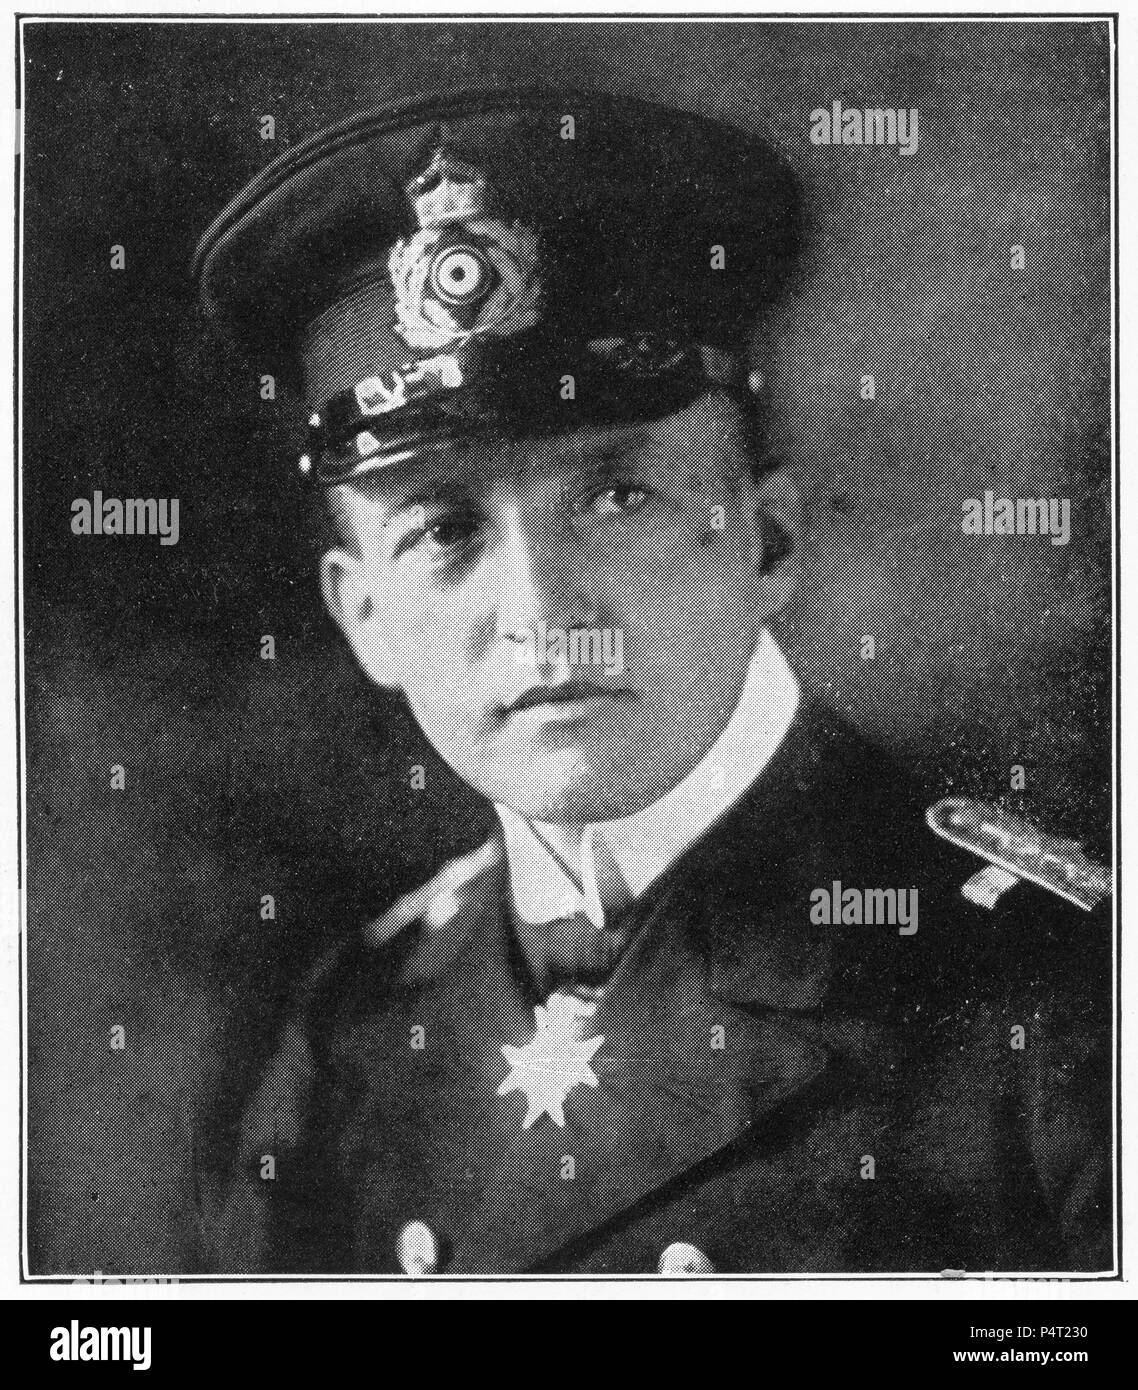 Portrait en demi-teinte de l'officier de marine allemand Walther Schweiger, commandant de l'U-20, le sous-marin qui a coulé le Lusitania. Banque D'Images